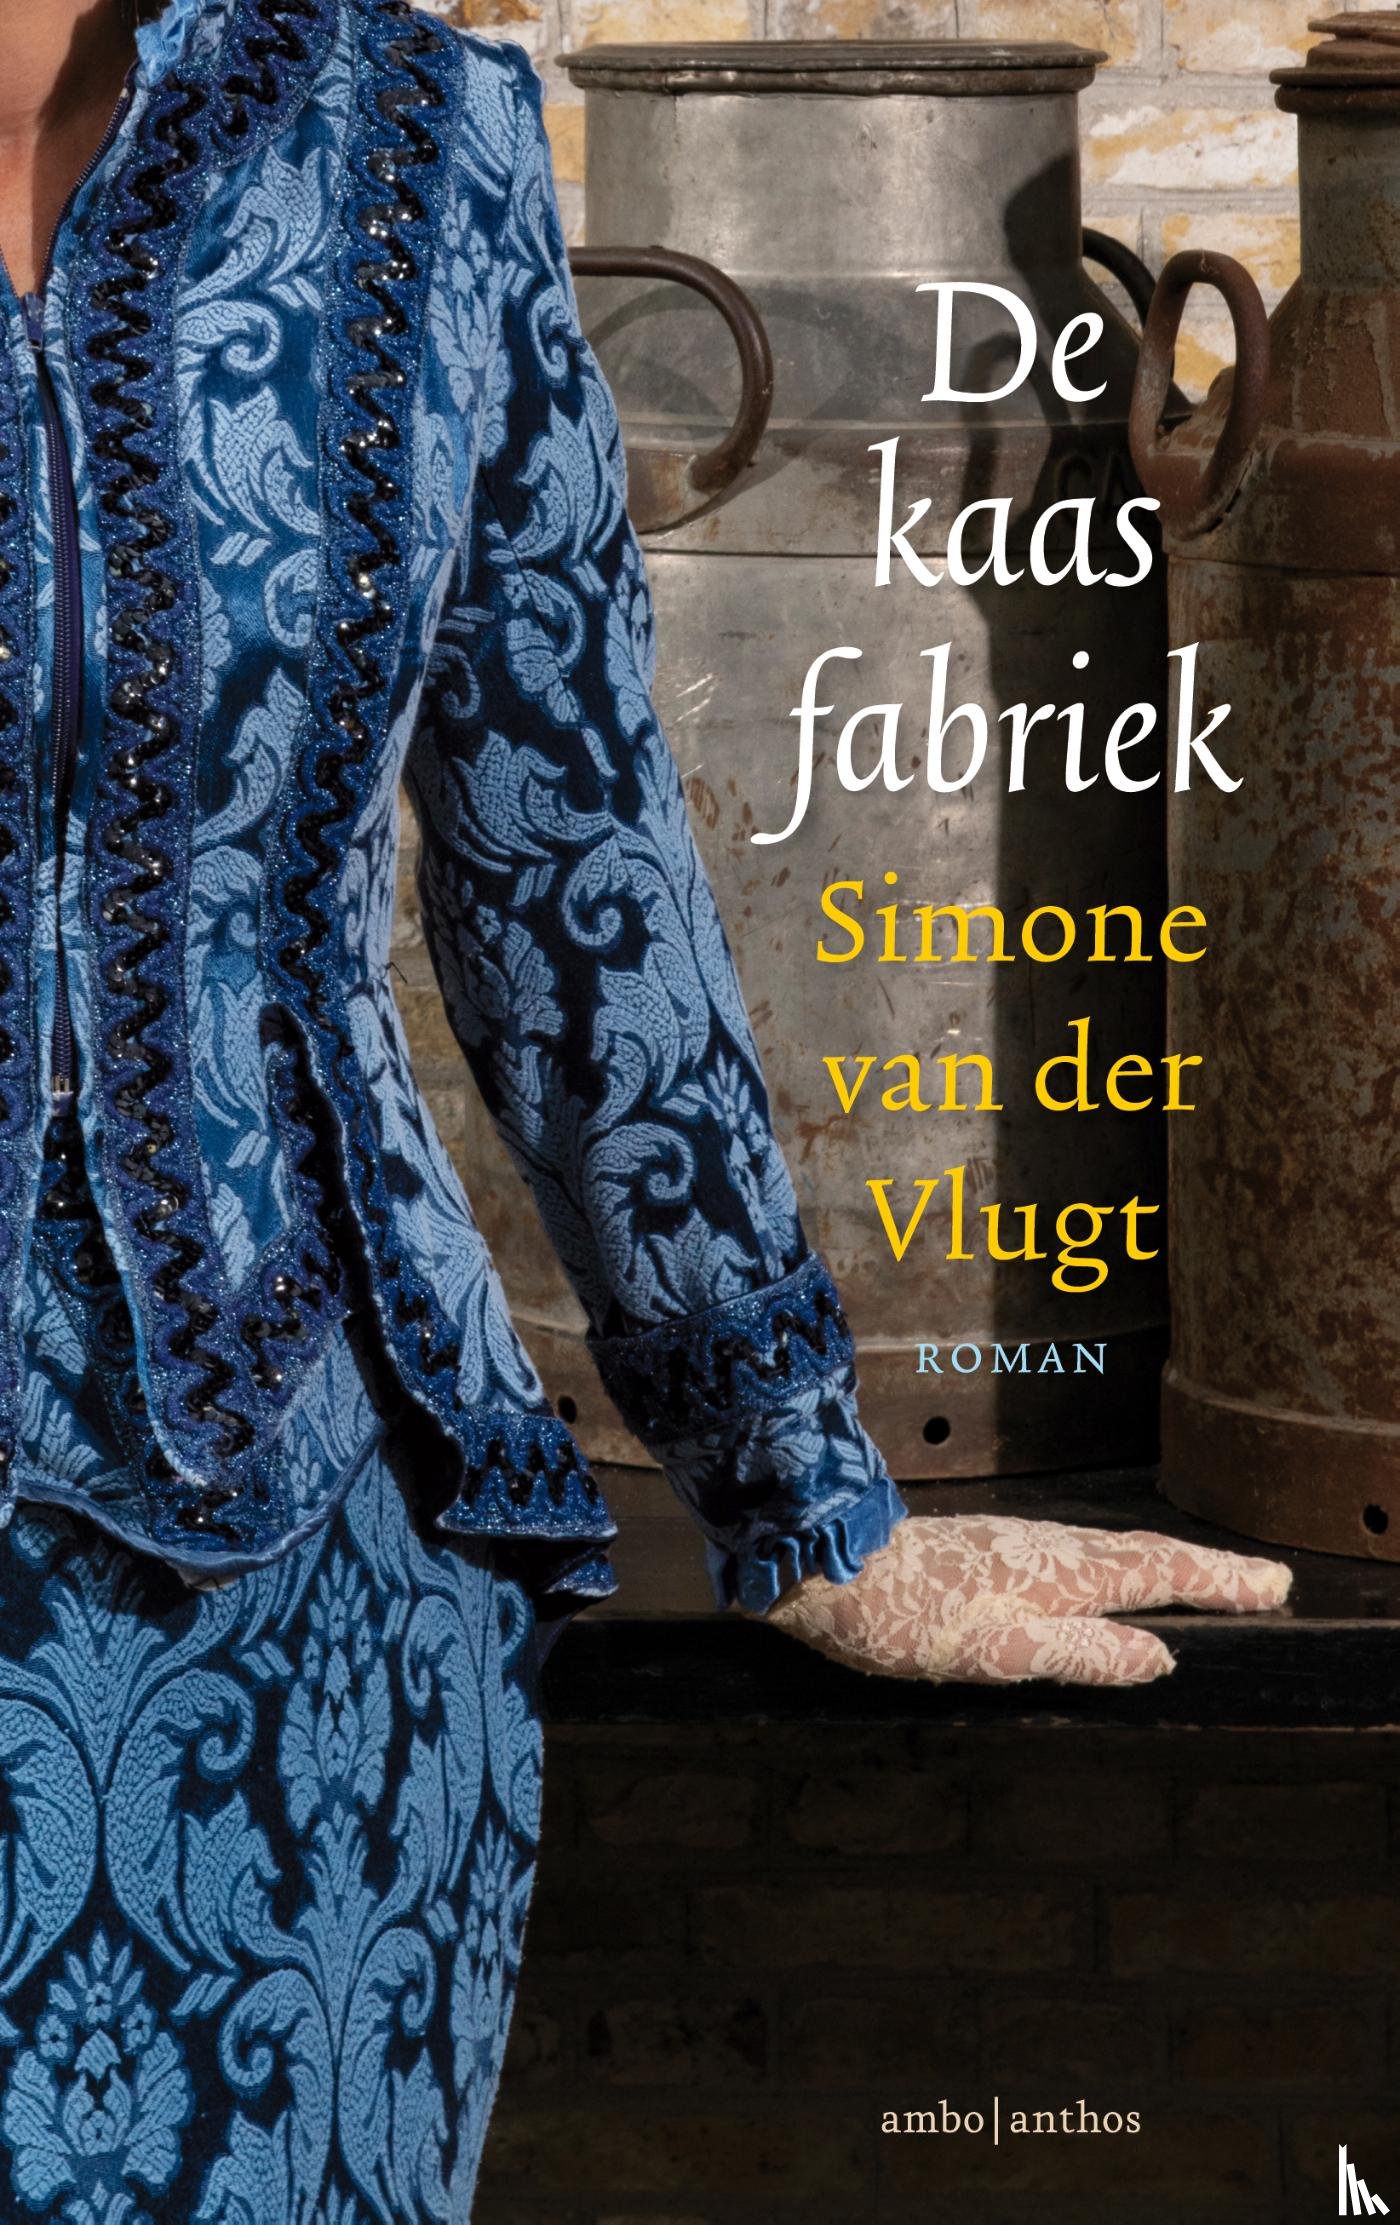 Vlugt, Simone van der - De kaasfabriek